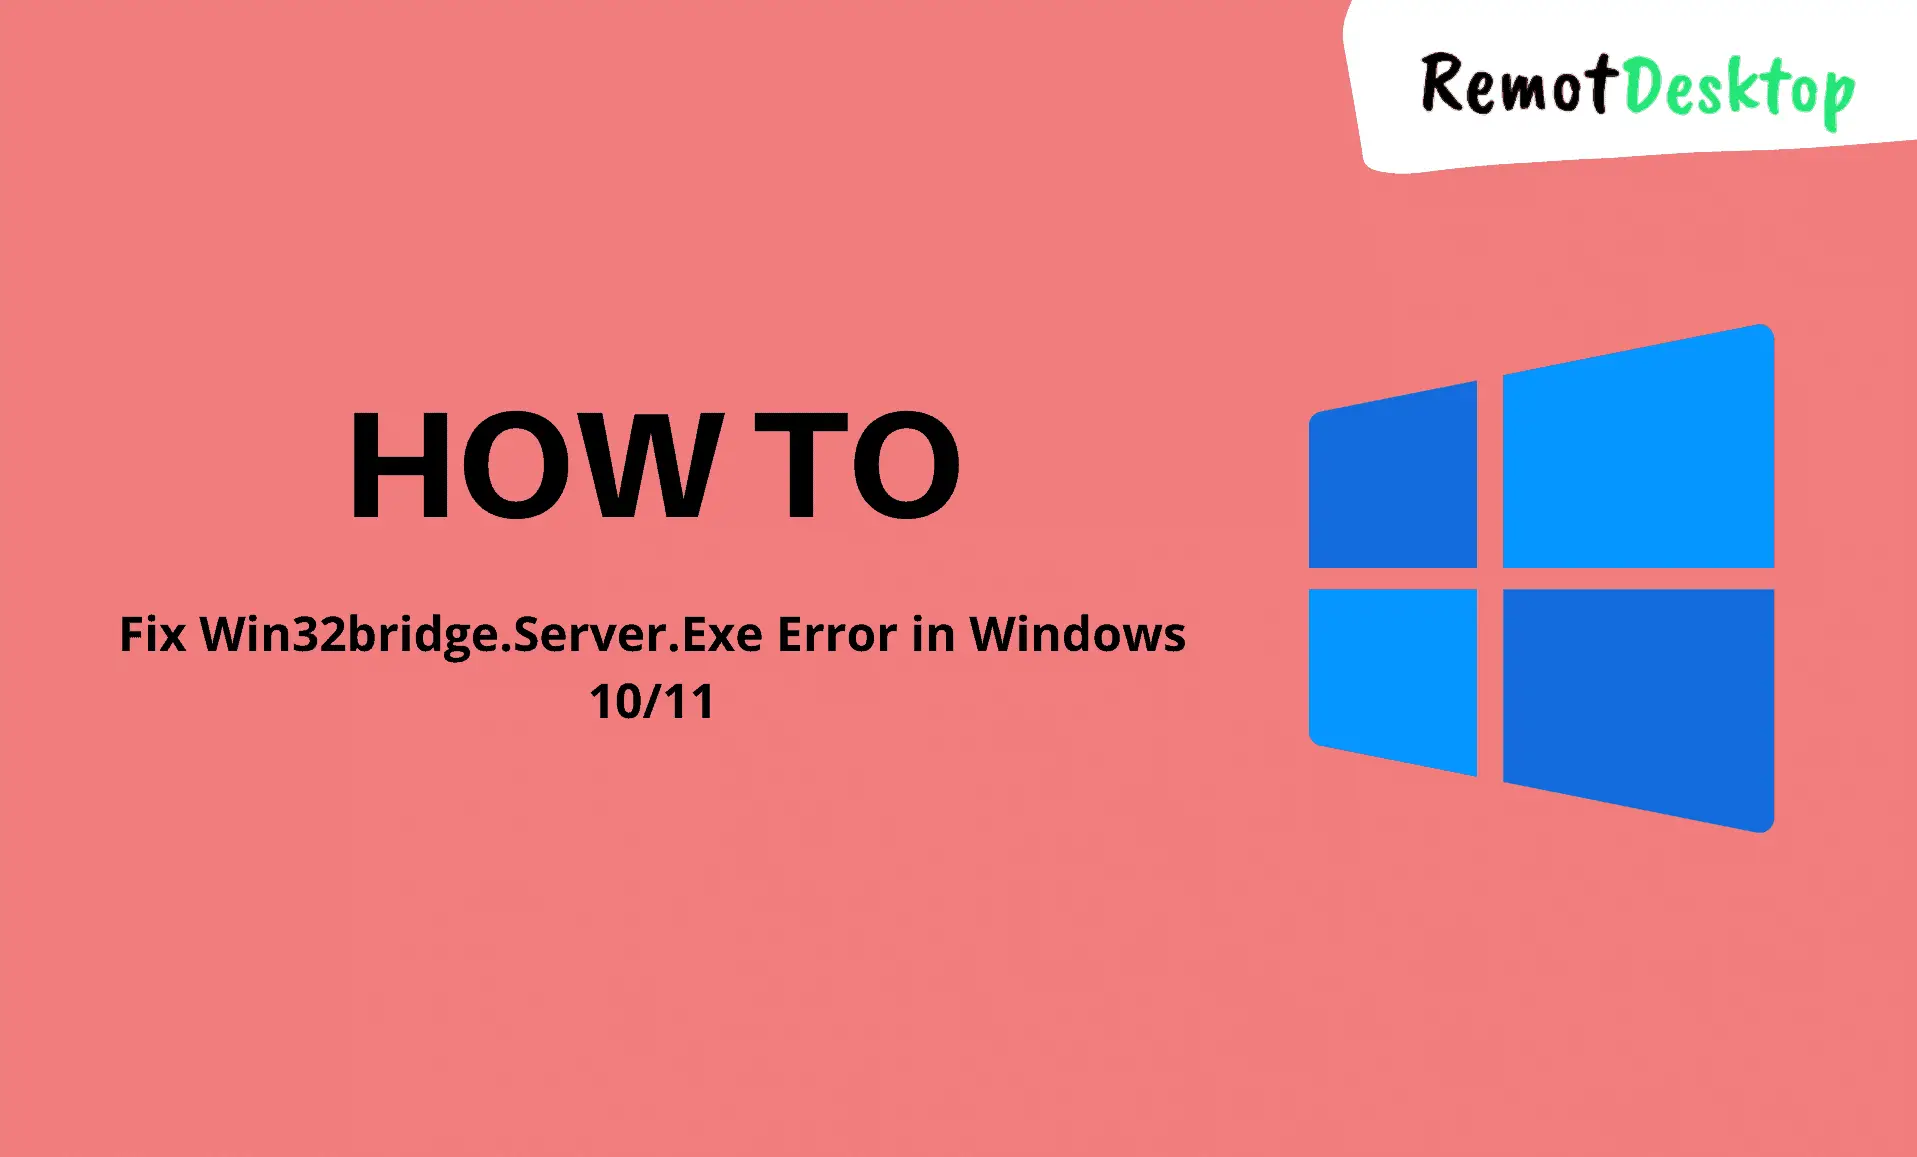 How to Fix Win32bridge.Server.exe Error in Windows 10/11